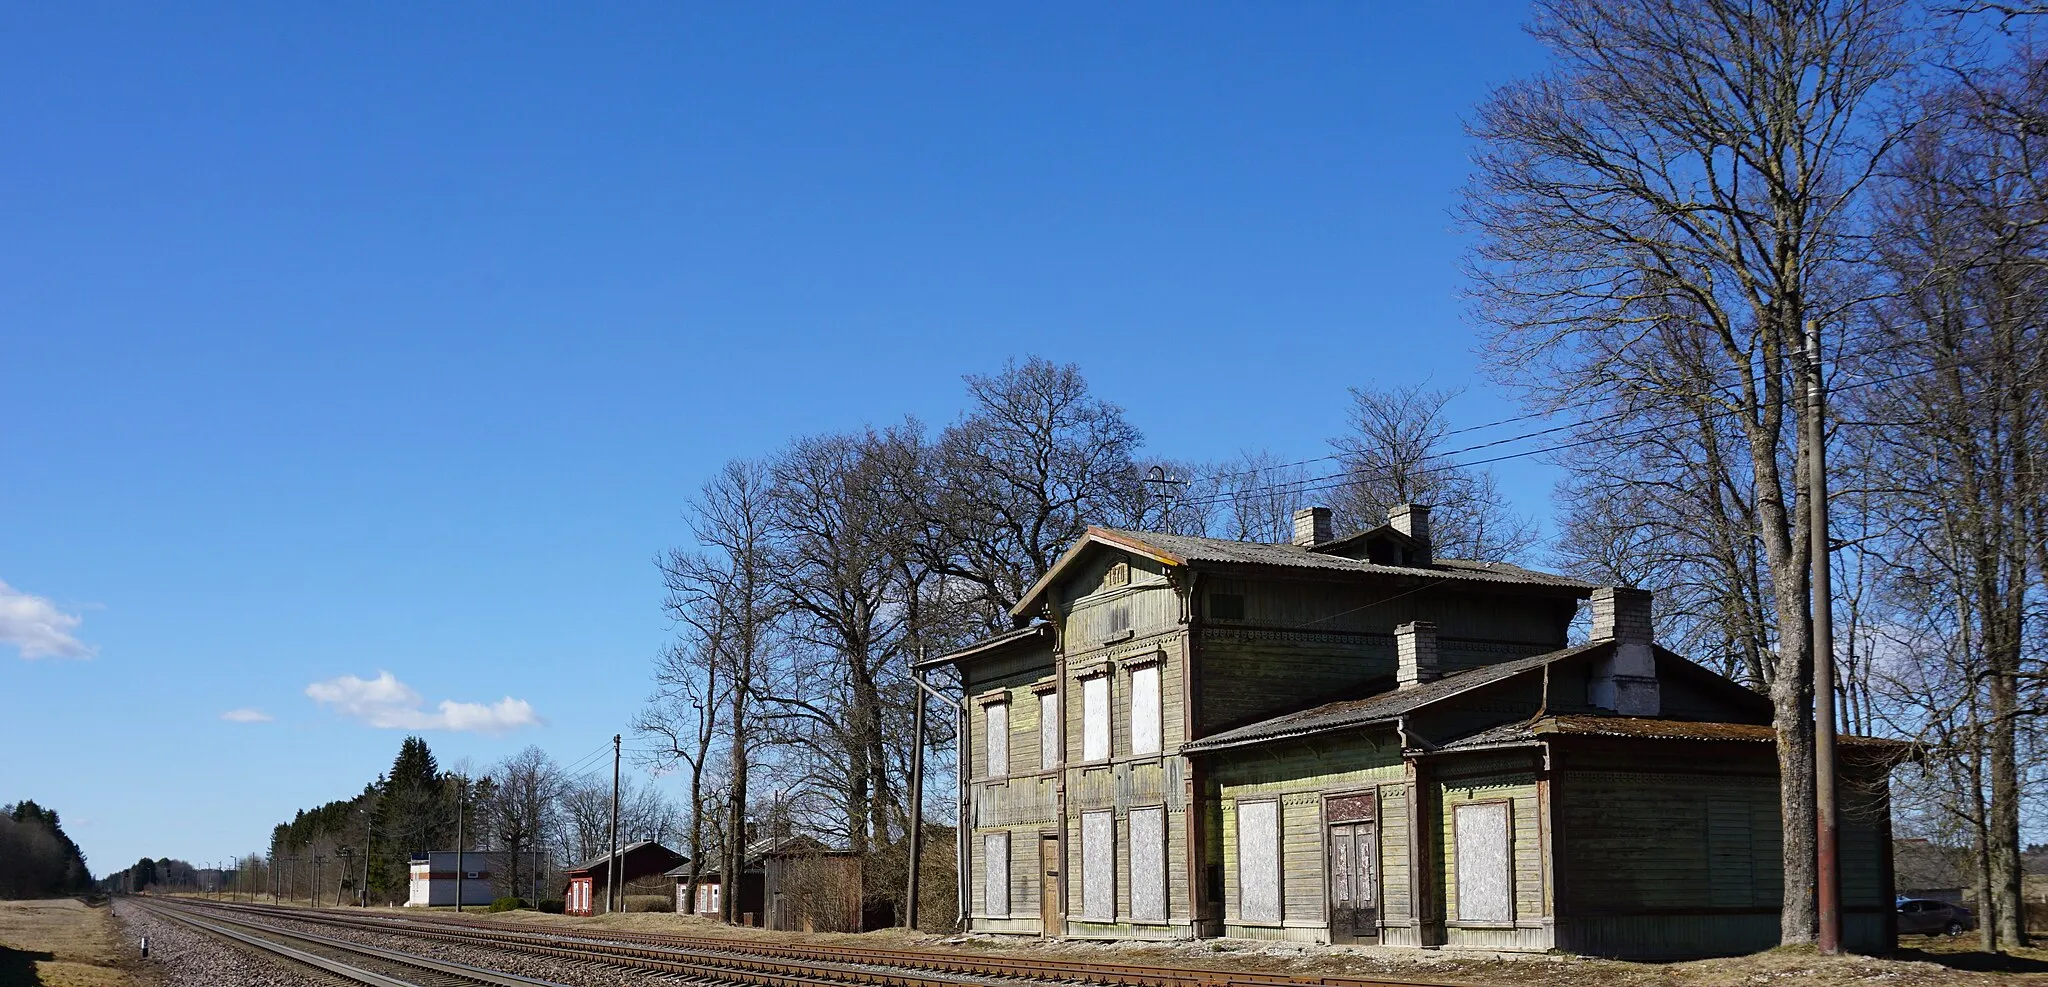 Photo showing: Kabala raudteejaam Tapa-Narva liinil. Kabala jaamahoone valmis koos raudteega 1870. aastal ja on koos abiehitistega silmapaistvalt autentsena säilinud tänaseni. Kahekorruseline kroonuhistoritsistlik puithoone ehitati III-IV klassi jaama tüüpprojekti järgi sarnaselt Paldiski, Keila, Raasiku jmt jaamahoonetega. Jaamahooneid iseloomustab madal viilkatus ja asümmeetriline pikifassaad, mille kõrgem viiluga keskosa jagab maja ühe- ja kahekorruseliseks tiivaks.
Erinevalt teistest sama tüübi jaamahoonetest on Kabala jaamahoone mõlema külje keskviilul tänaseni säilinud number raudtee avamise aastaga: "1870", silmapaistvalt hästi on säilinud ka hoone asulapoolse külje dekoor, ehkki amortiseerunud katuse tõttu esineb hoonel silmnähtavaid veekahjustusi. Sisse on langenud jaamahoone ootesaali lagi. Kuigi hoone omab suurt väärtust ning vääriks säilitamist on ehitise elujõulisus ja kasutusperspektiiv küsitavad.
2000. aastate algusest seisab jaamahoone tühjalt ja on järjest halvenevas seisukorras.

2019. aastal avaldatud nimekirja kohaselt kuulub Kabala jaamahoone ehitiste hulka, millest Eesti Raudtee soovib vabaneda.